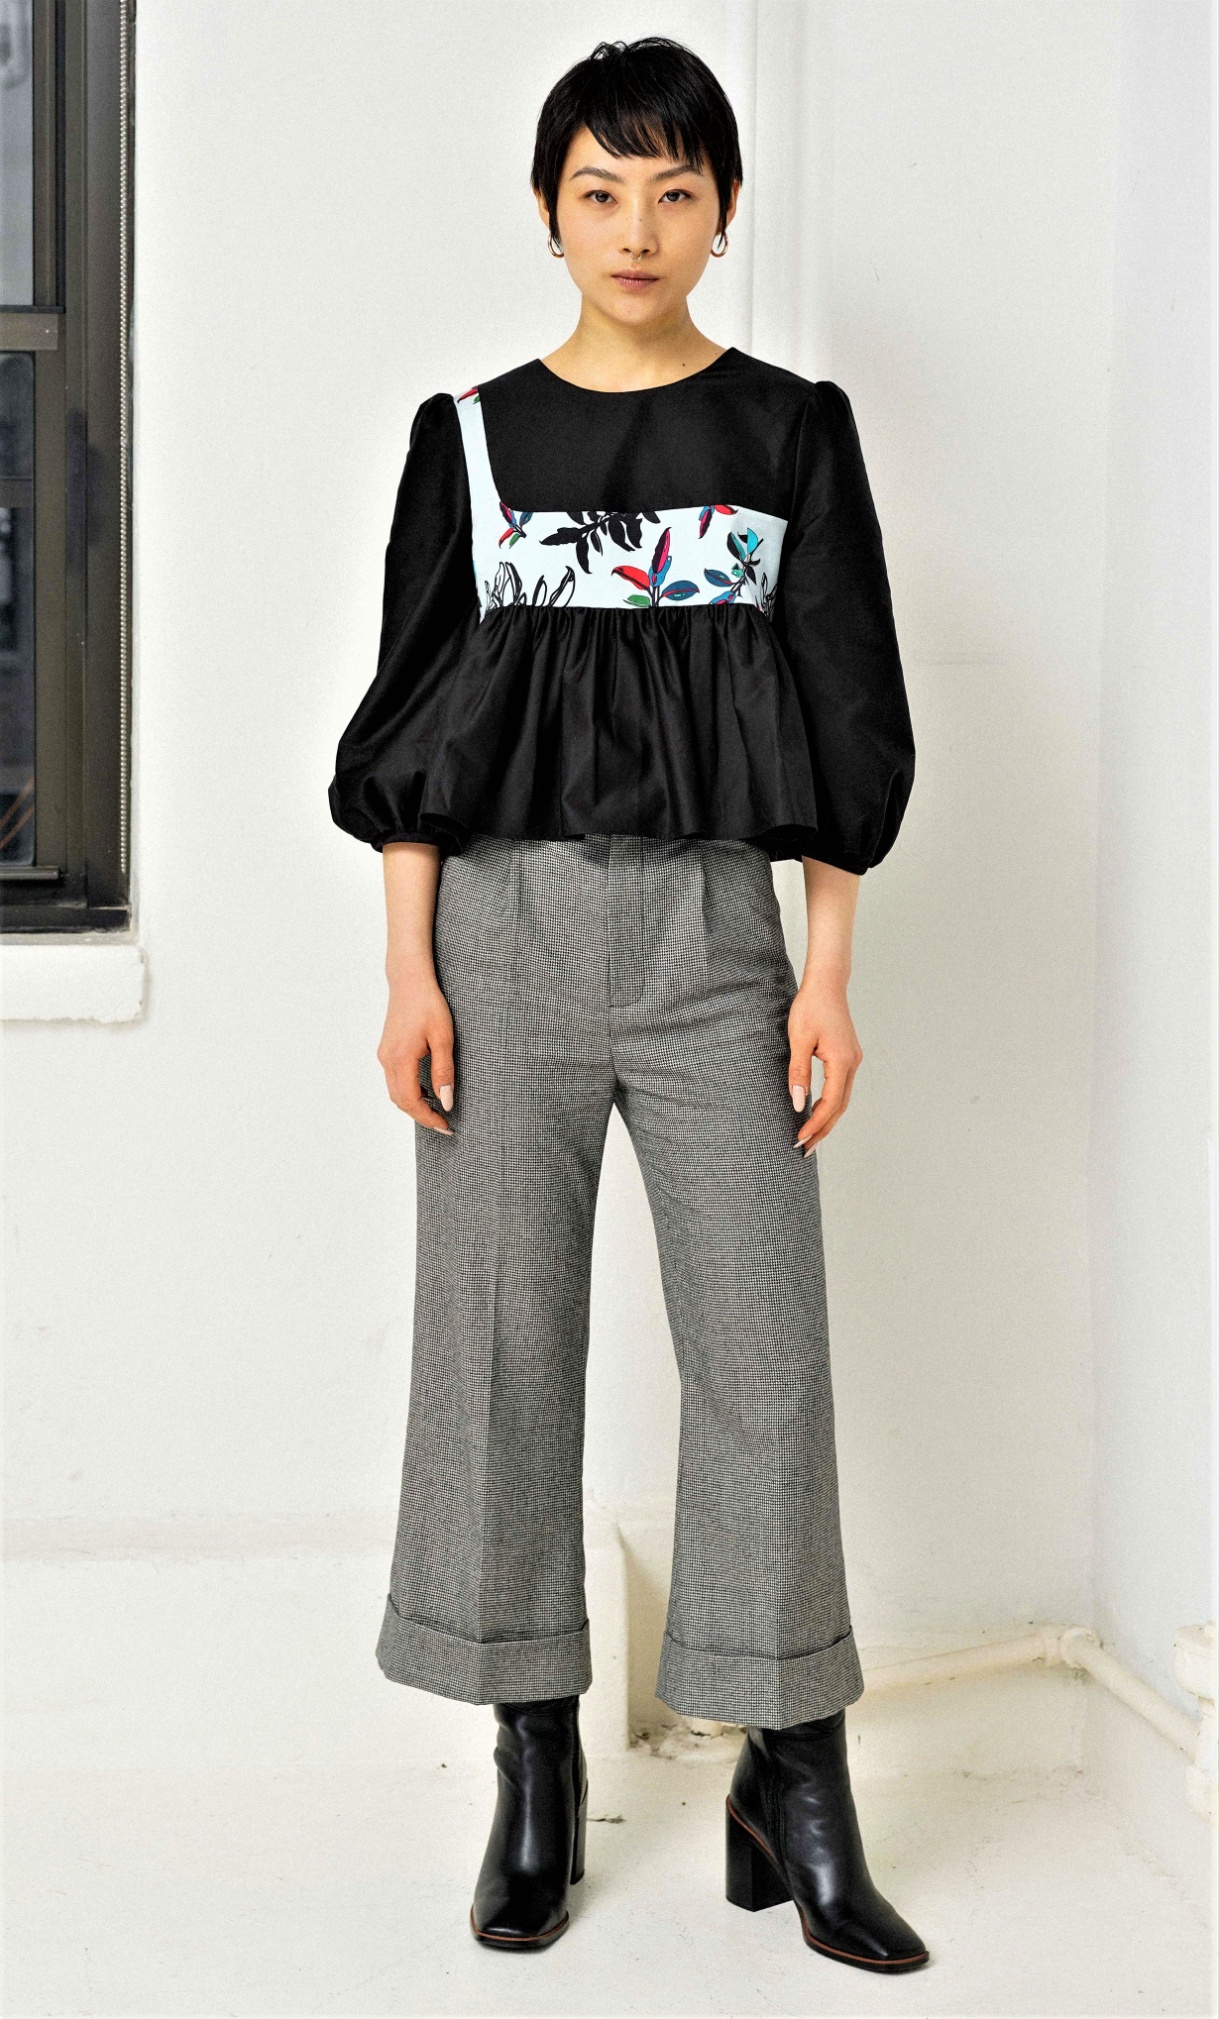 NYFW Snow Xue Gao Fall 2-21 Vogue puff top w pants cropped.jpg